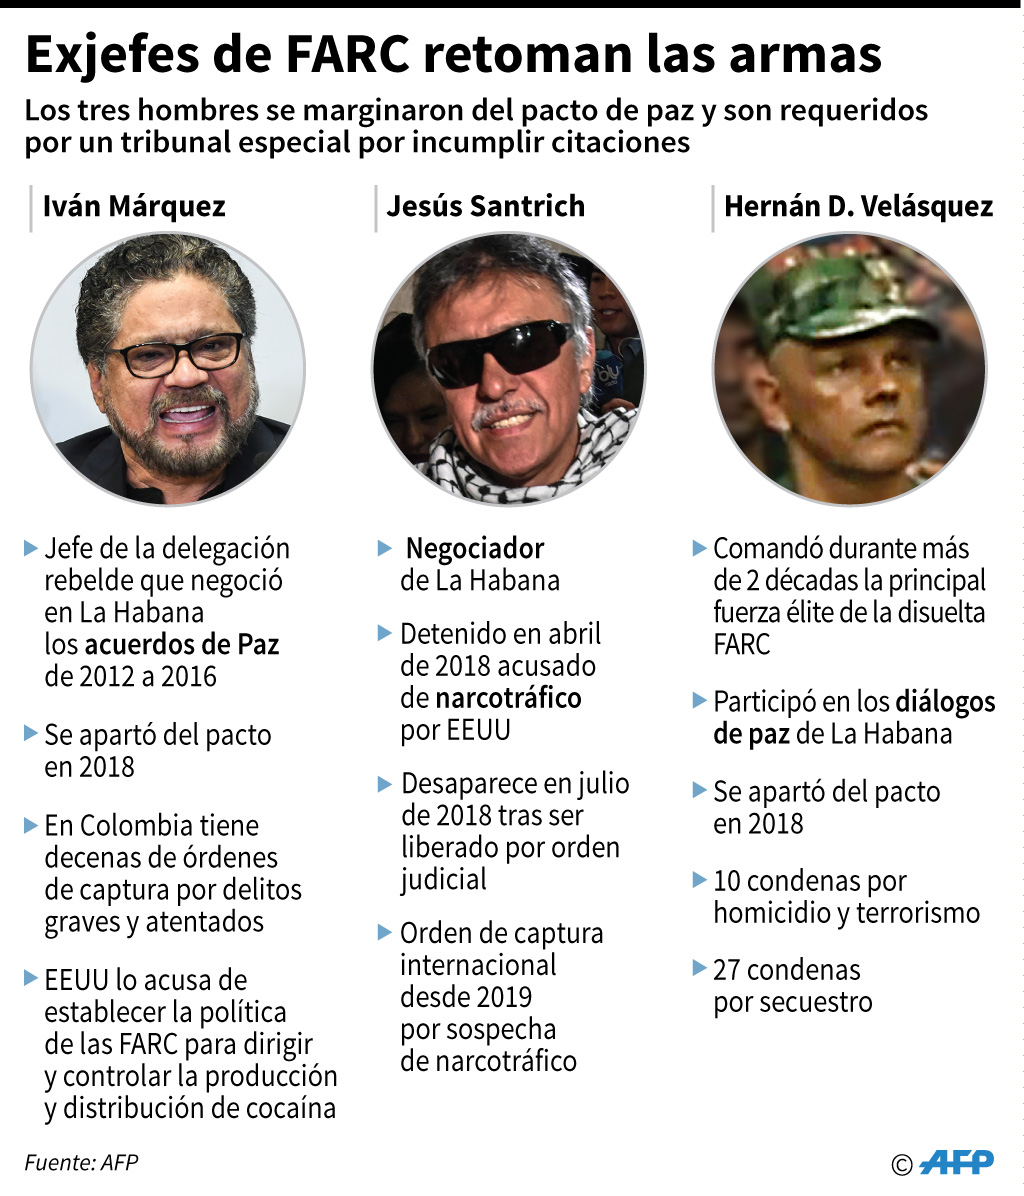 Fichas biográficas de los tres exjefes de la disuelta guerrilla de las FARC que anunciaron la nueva rebelión en Colombia. (Infografía: AFP)